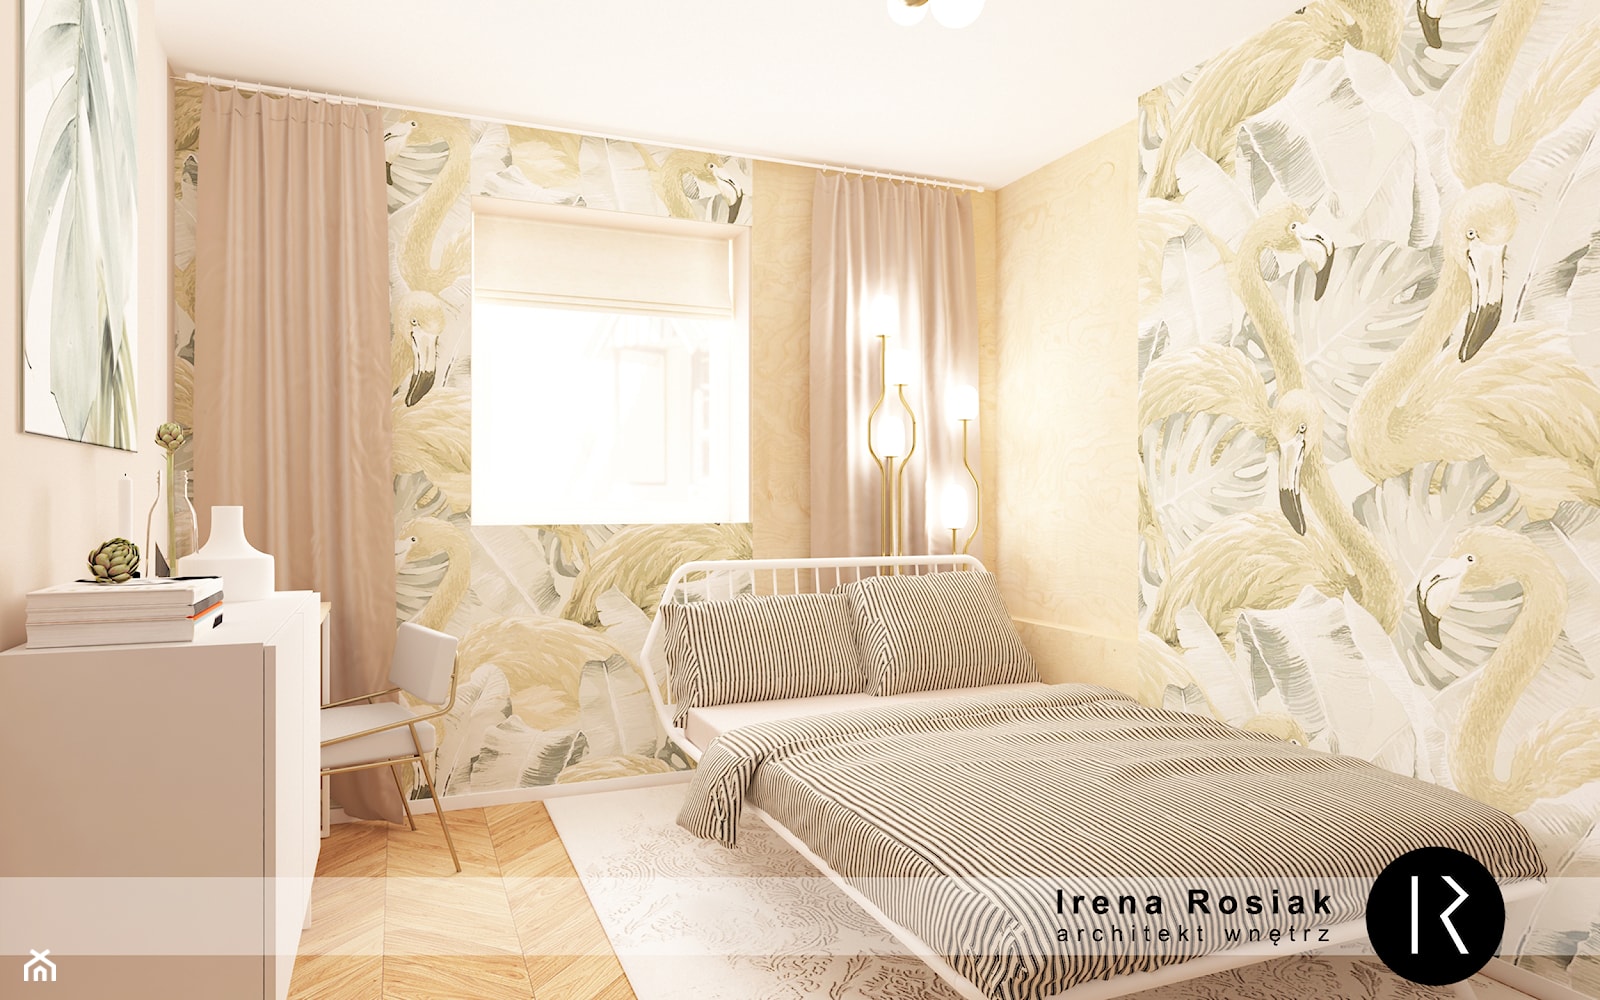 Sypialnia z miejscem do pracy. - zdjęcie od Irena Rosiak Architekt Wnętrz - Homebook